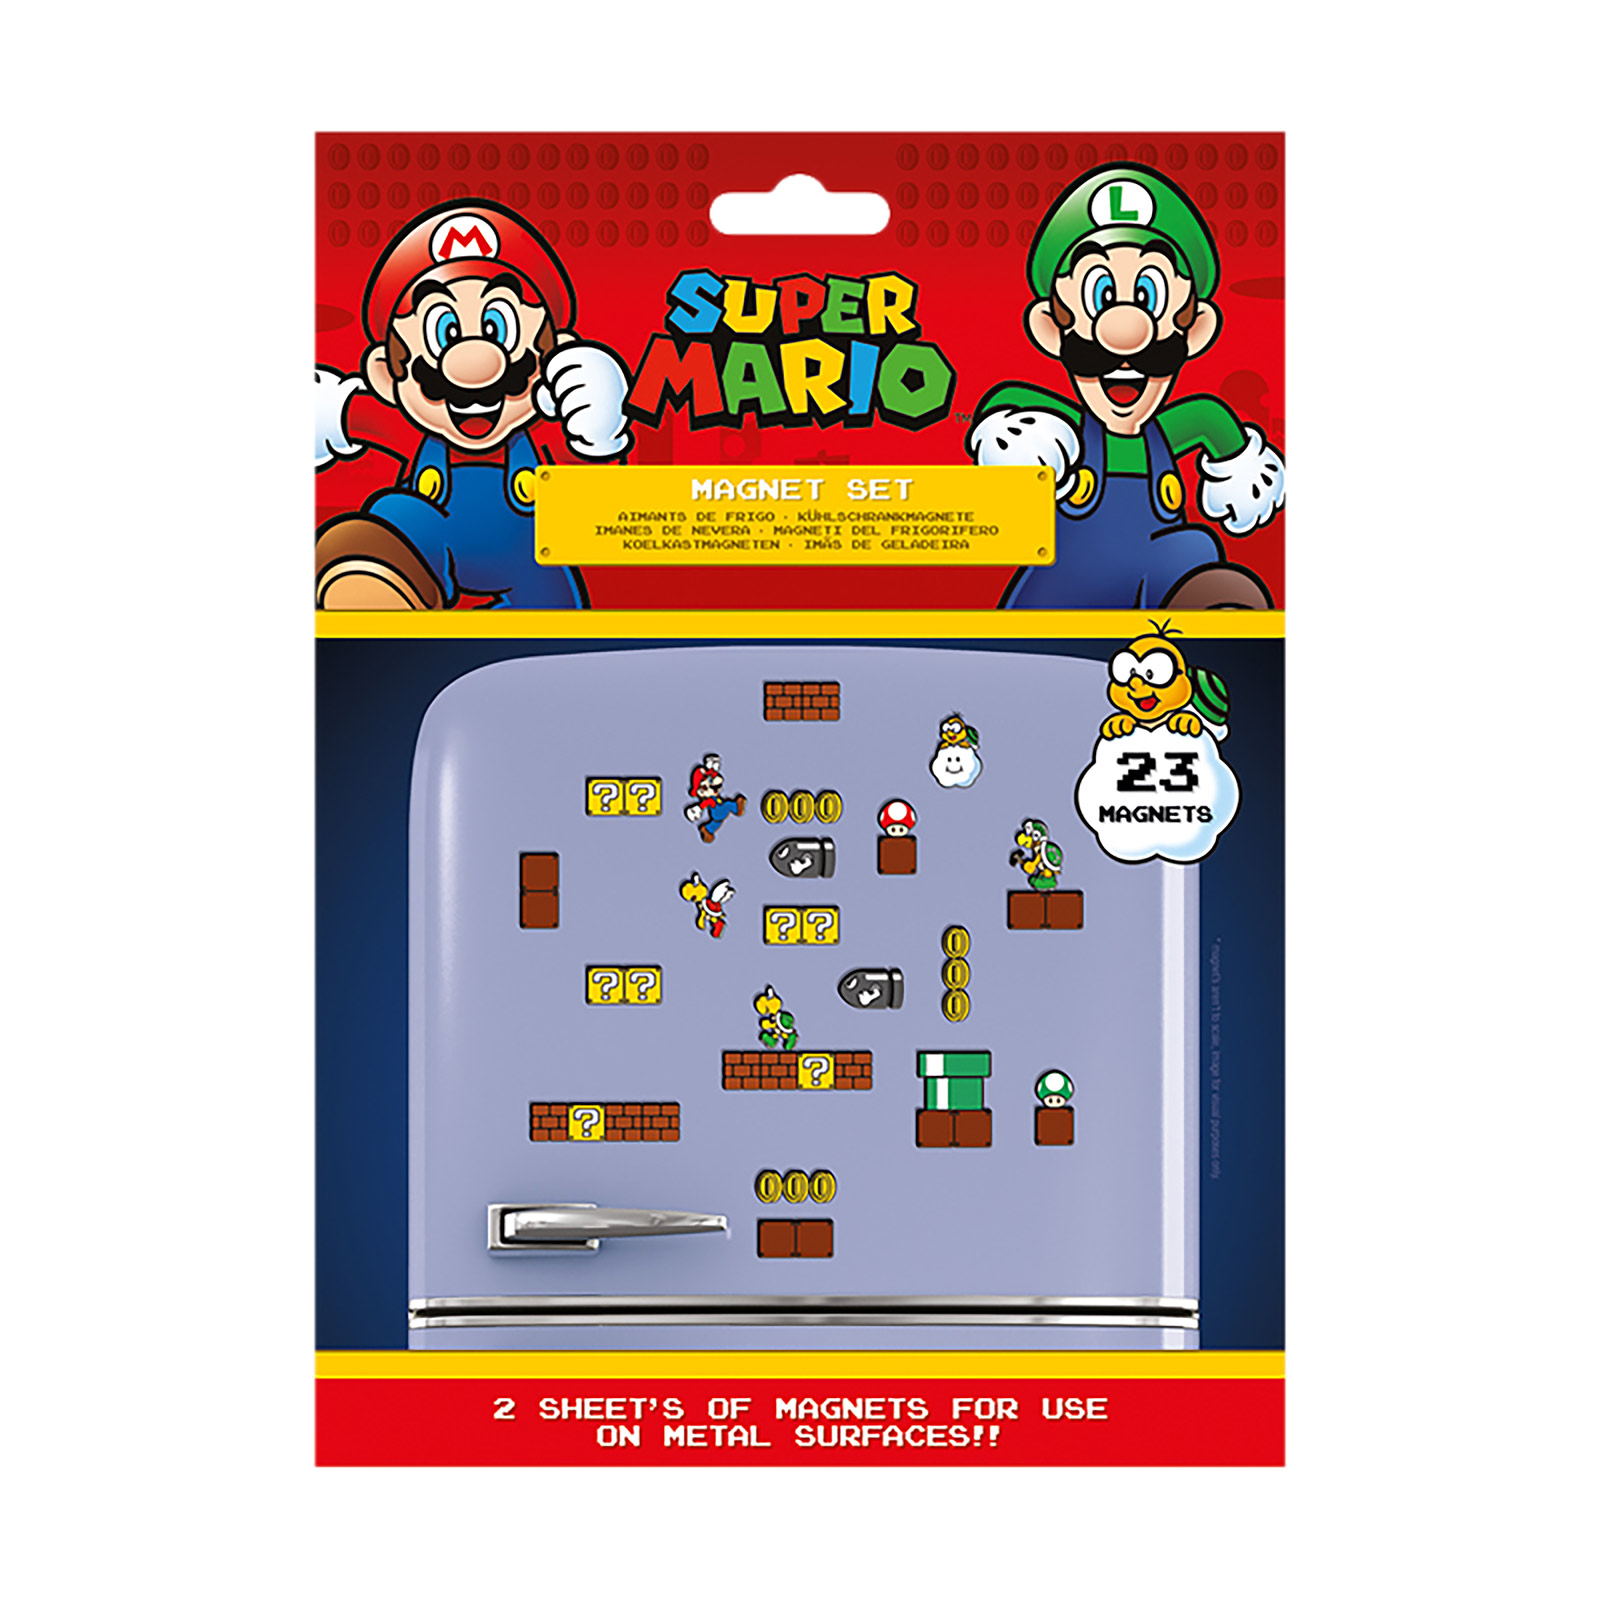 Super Mario - Mushroom Kingdom Magnet-Set